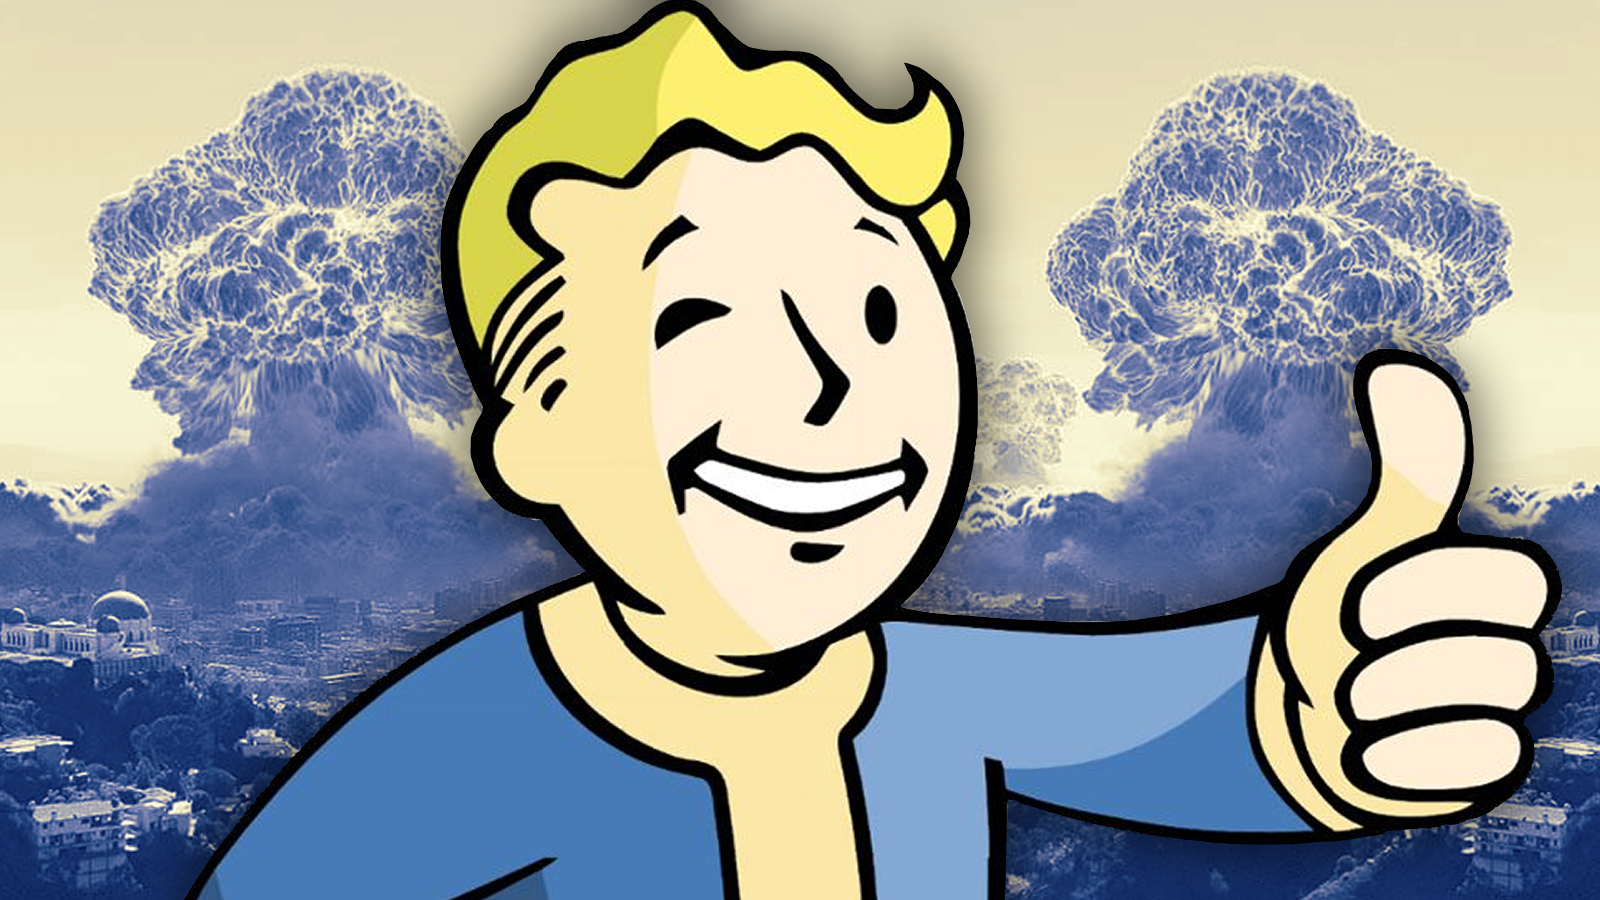 El origen del Vault Boy de Fallout pone de manifiesto el mal de la cooptación corporativa